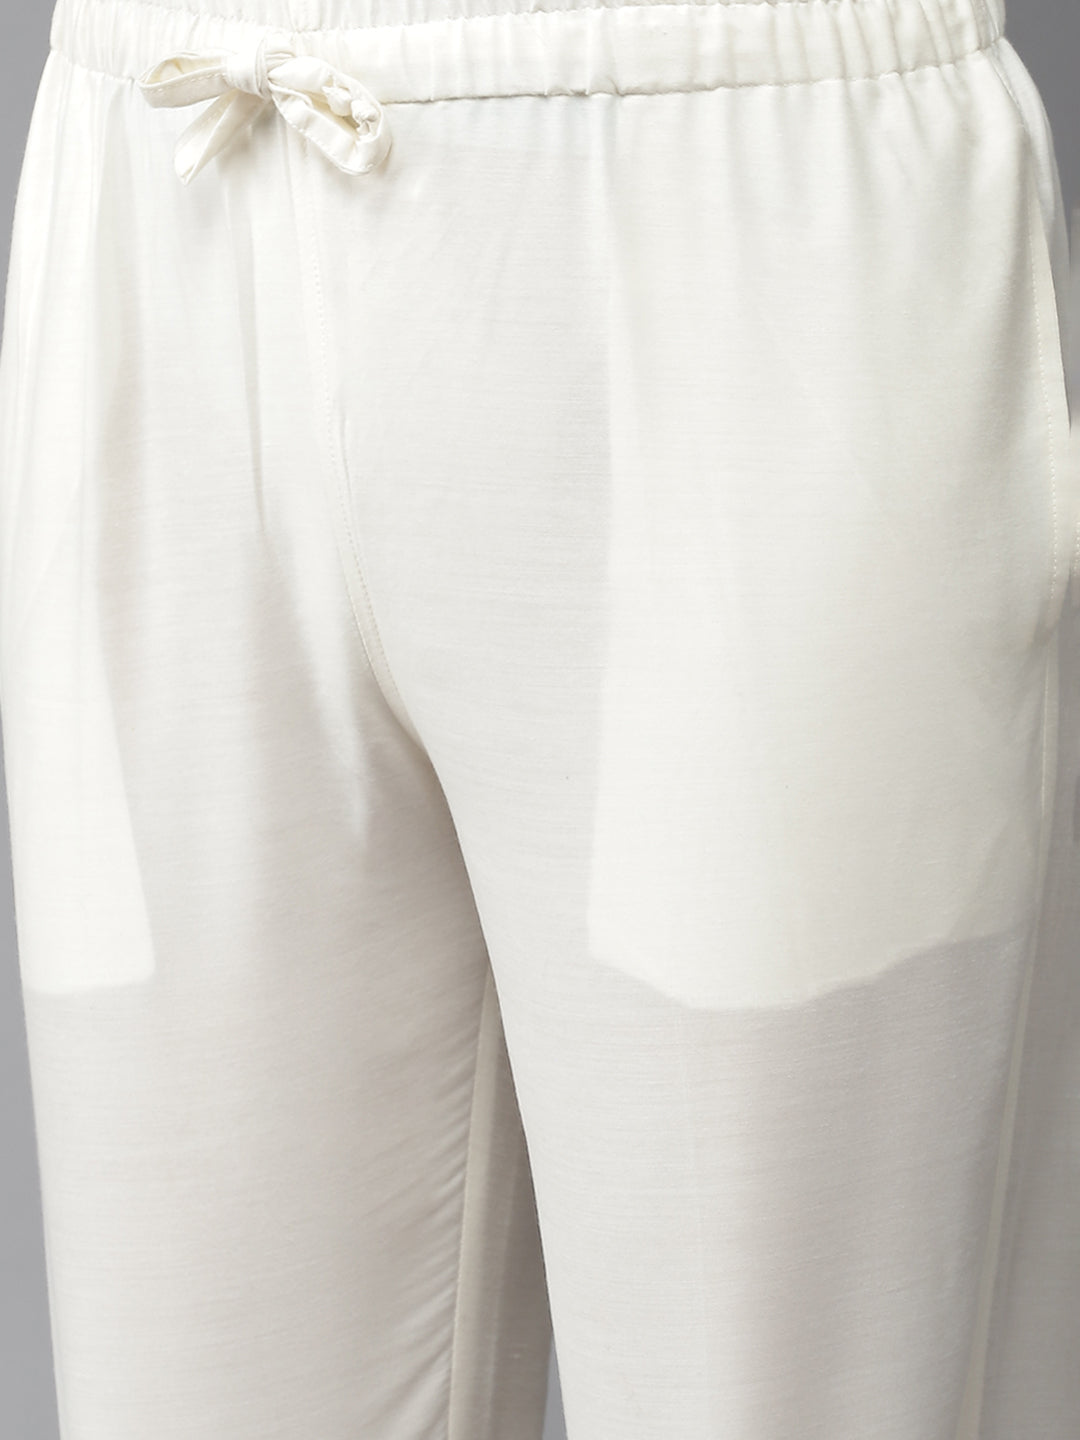 Cotton Silk Straight kurta with pyjama